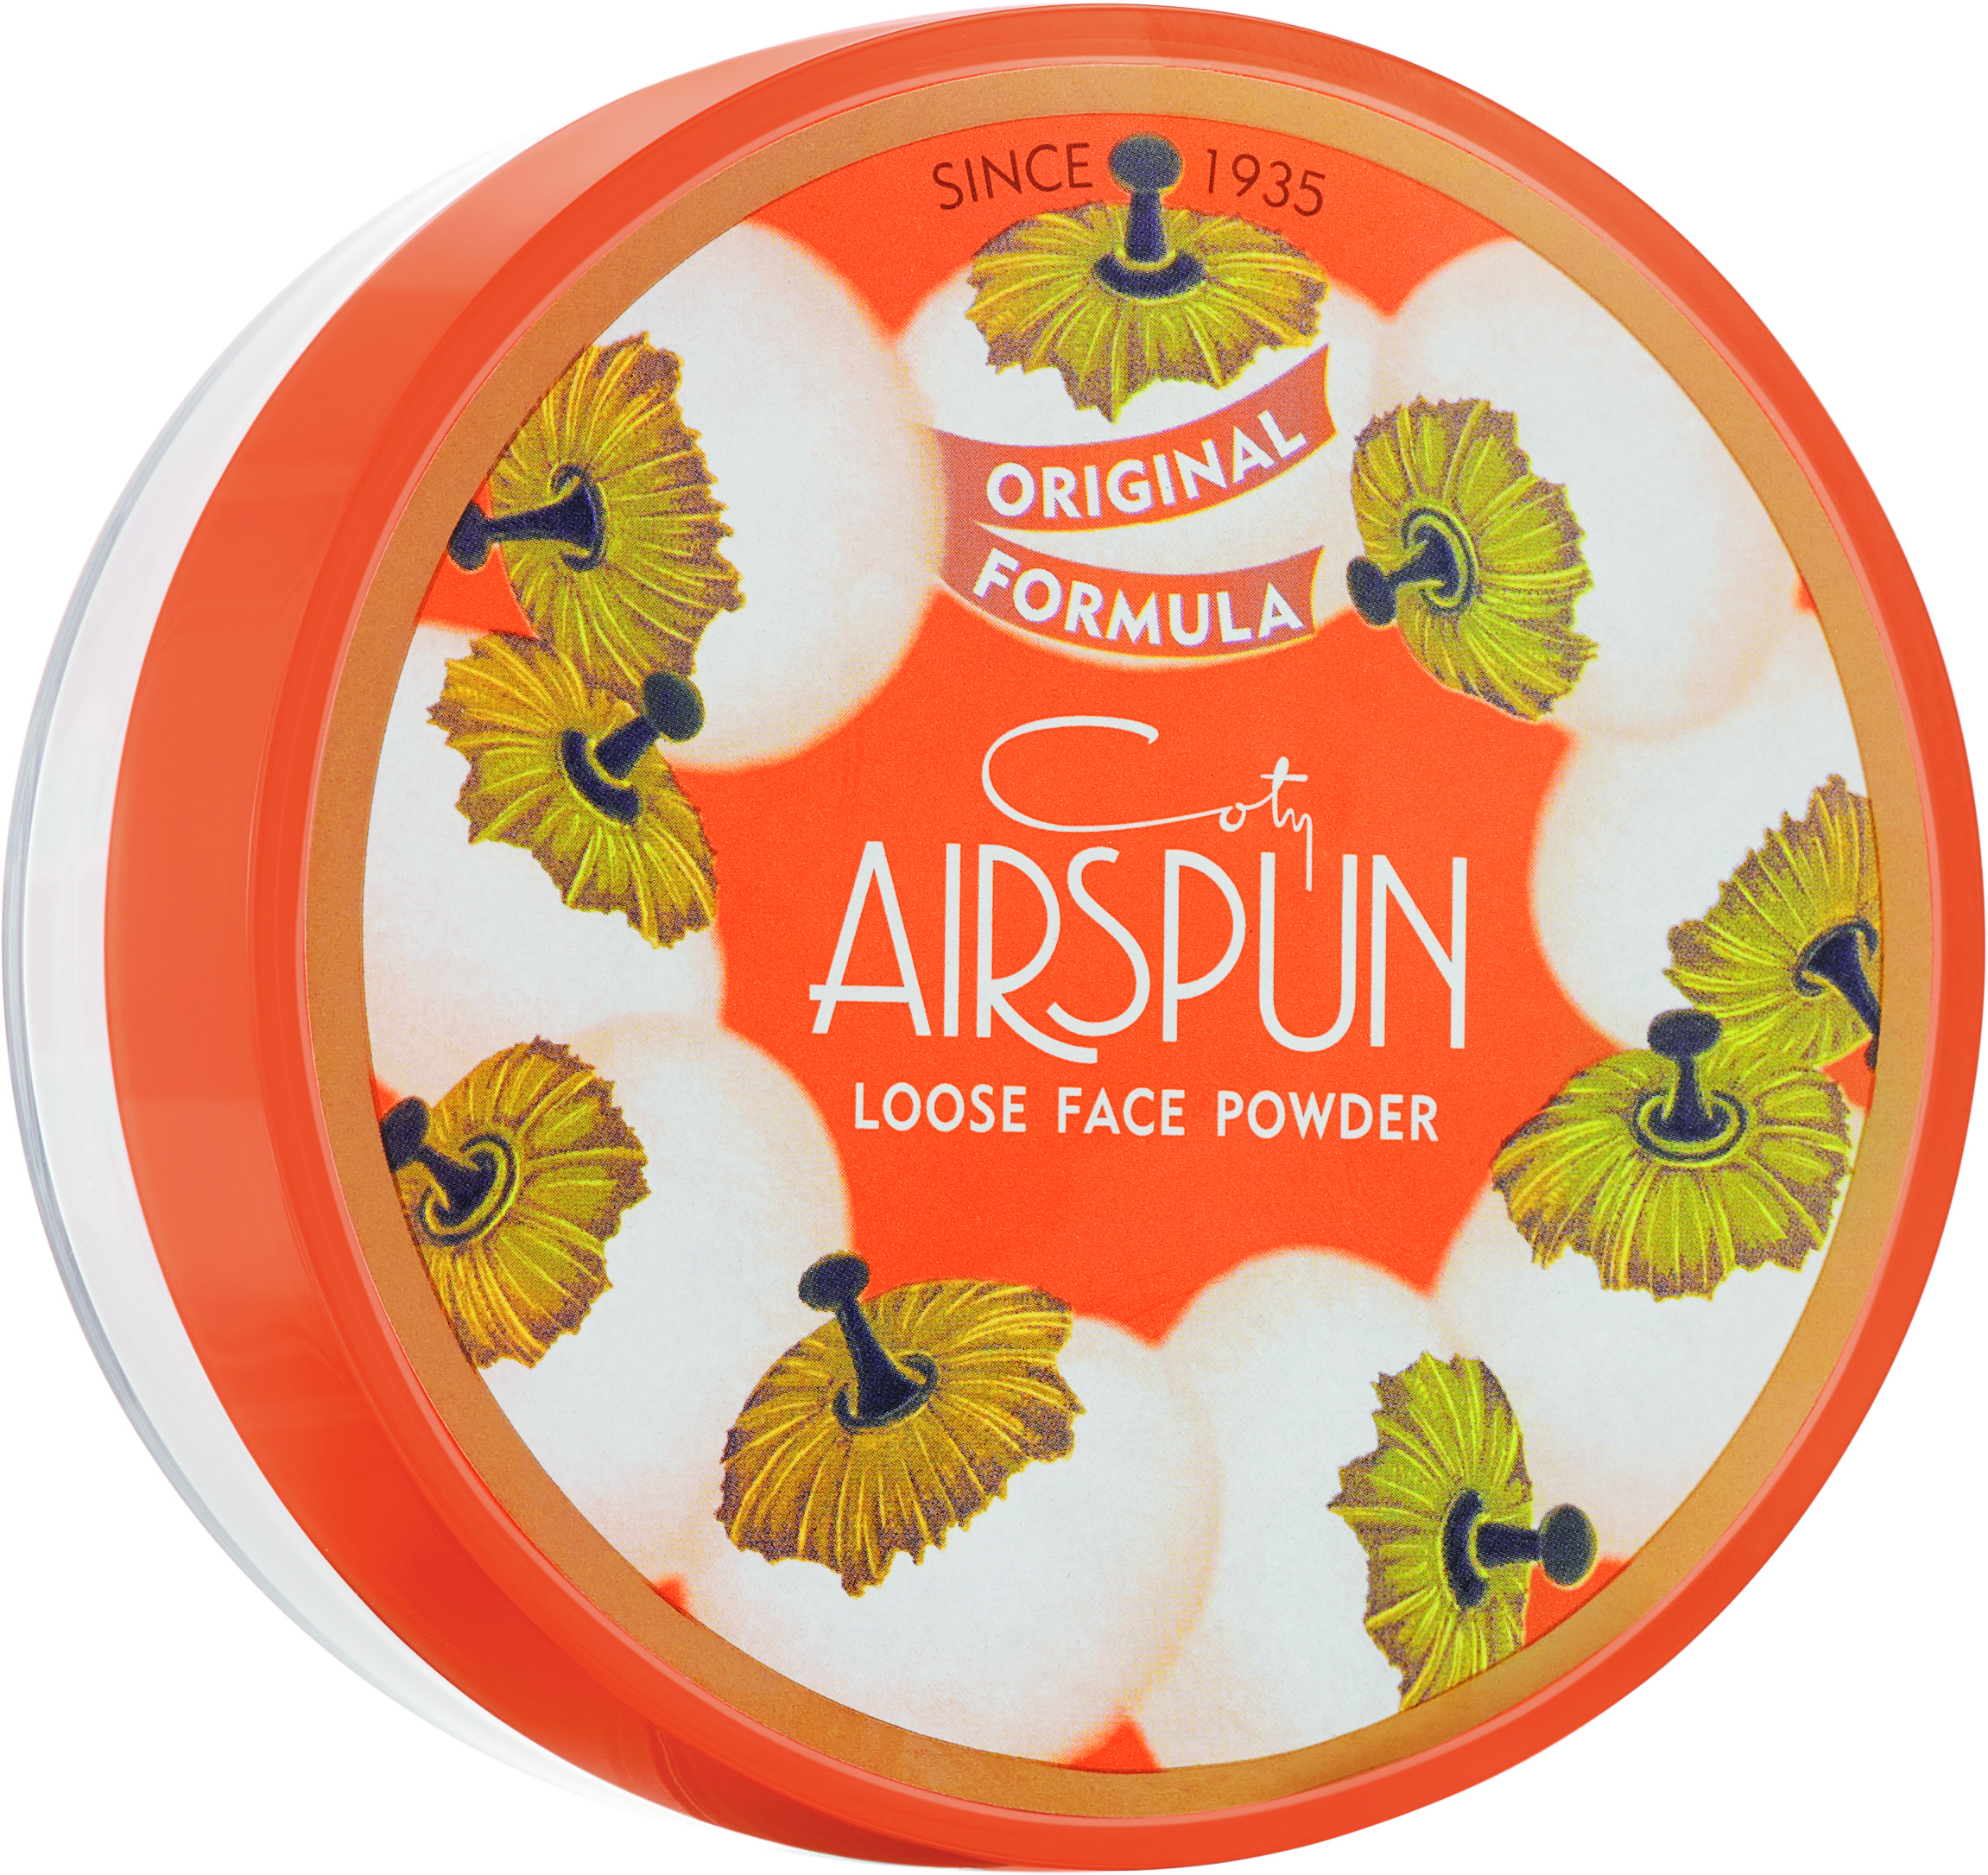 Airspun Loose Face Powder